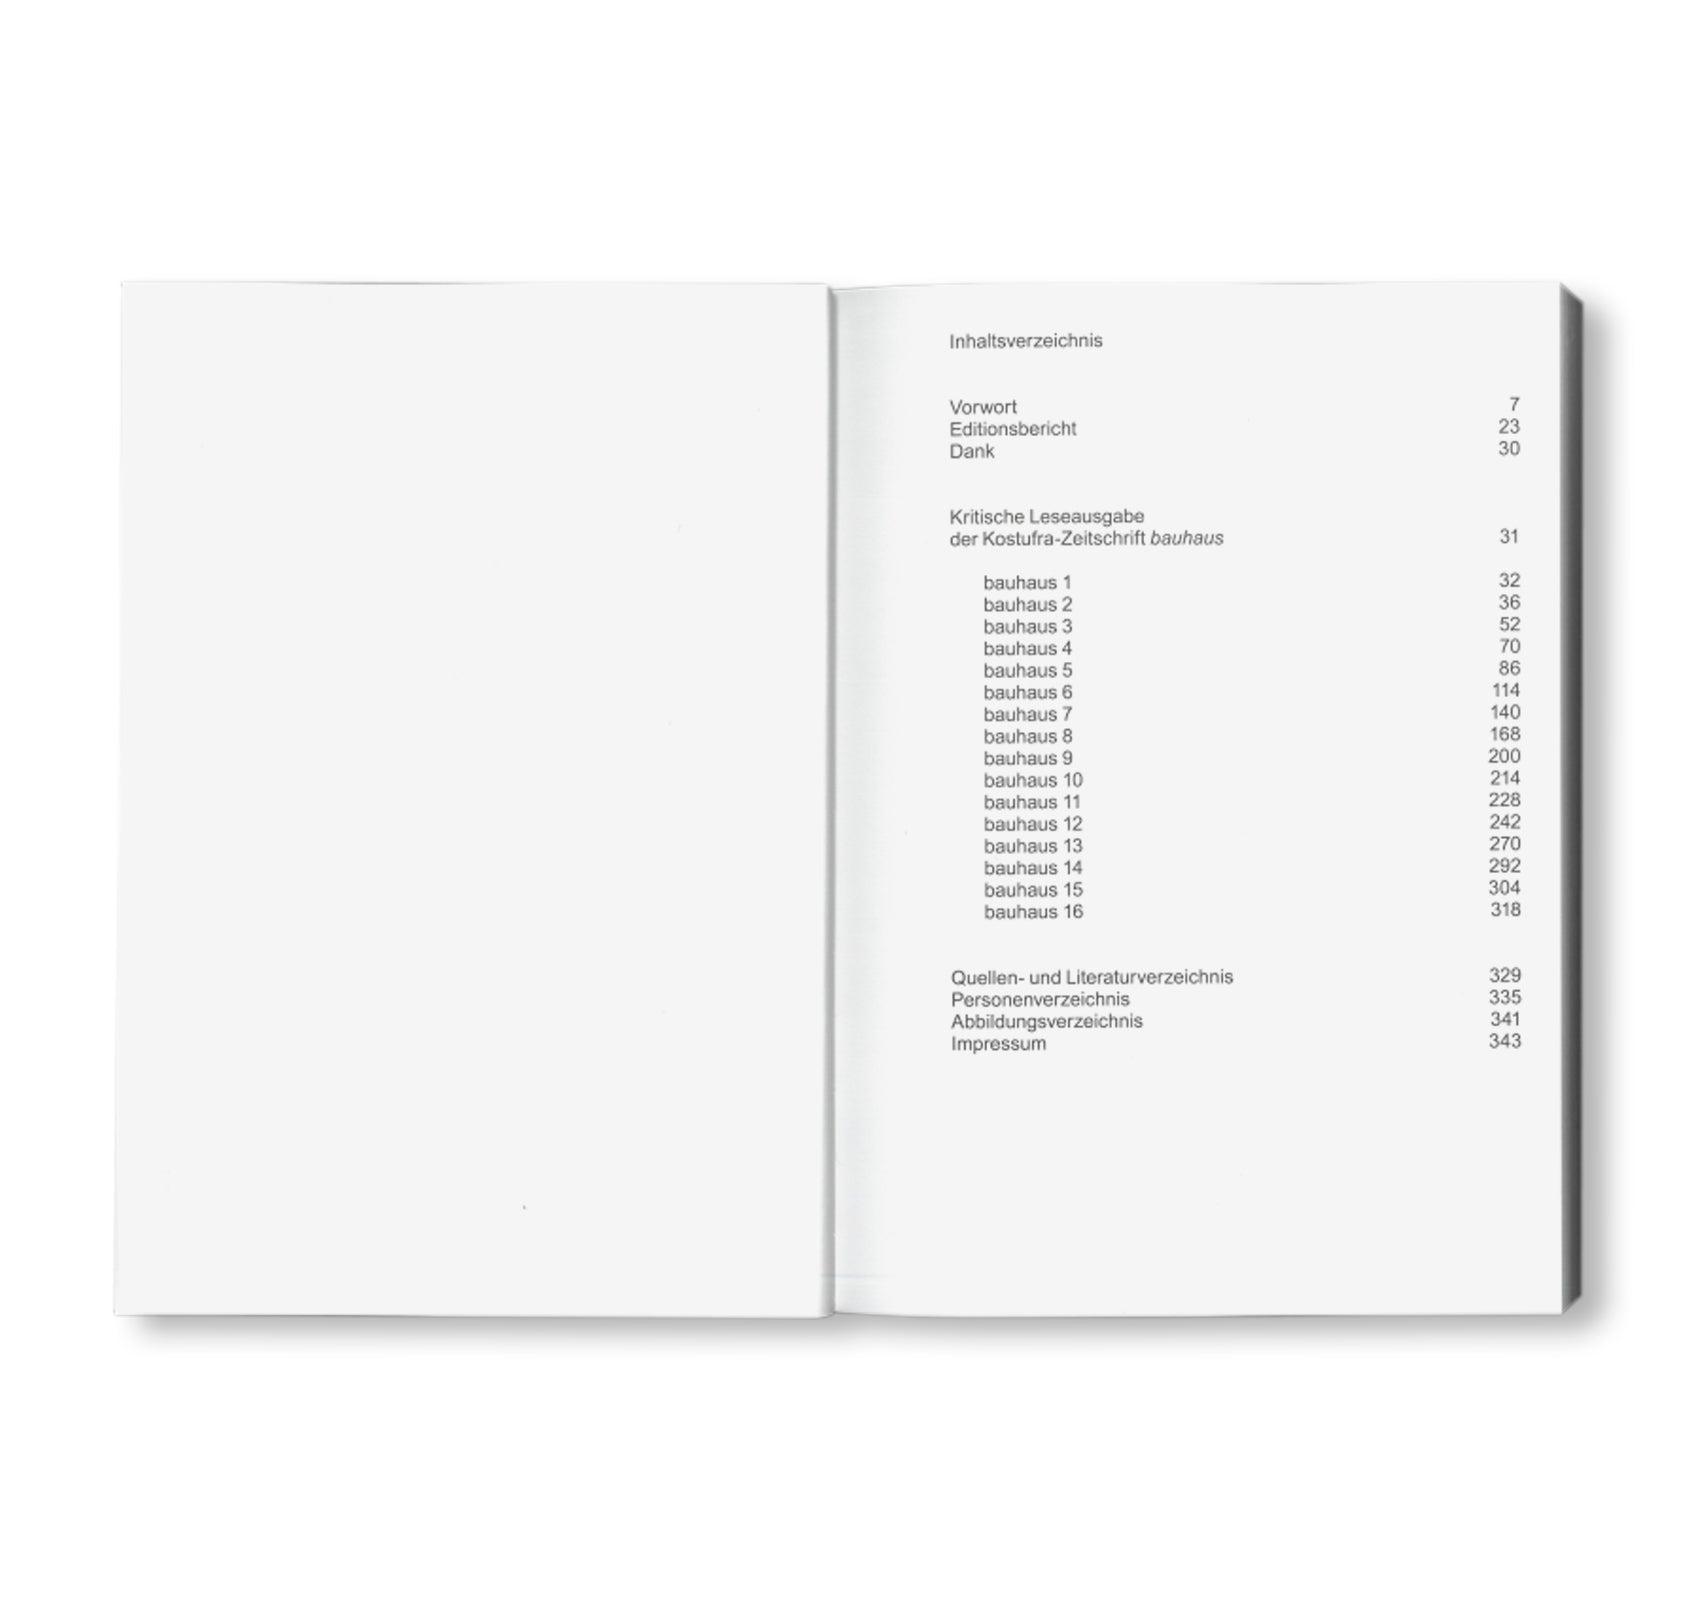 BAUHAUS. SPRACHROHR DER STUDIERENDEN. ORGAN DER KOSTUFRA / Edition Bauhaus 62 by Stiftung Bauhaus Dessau